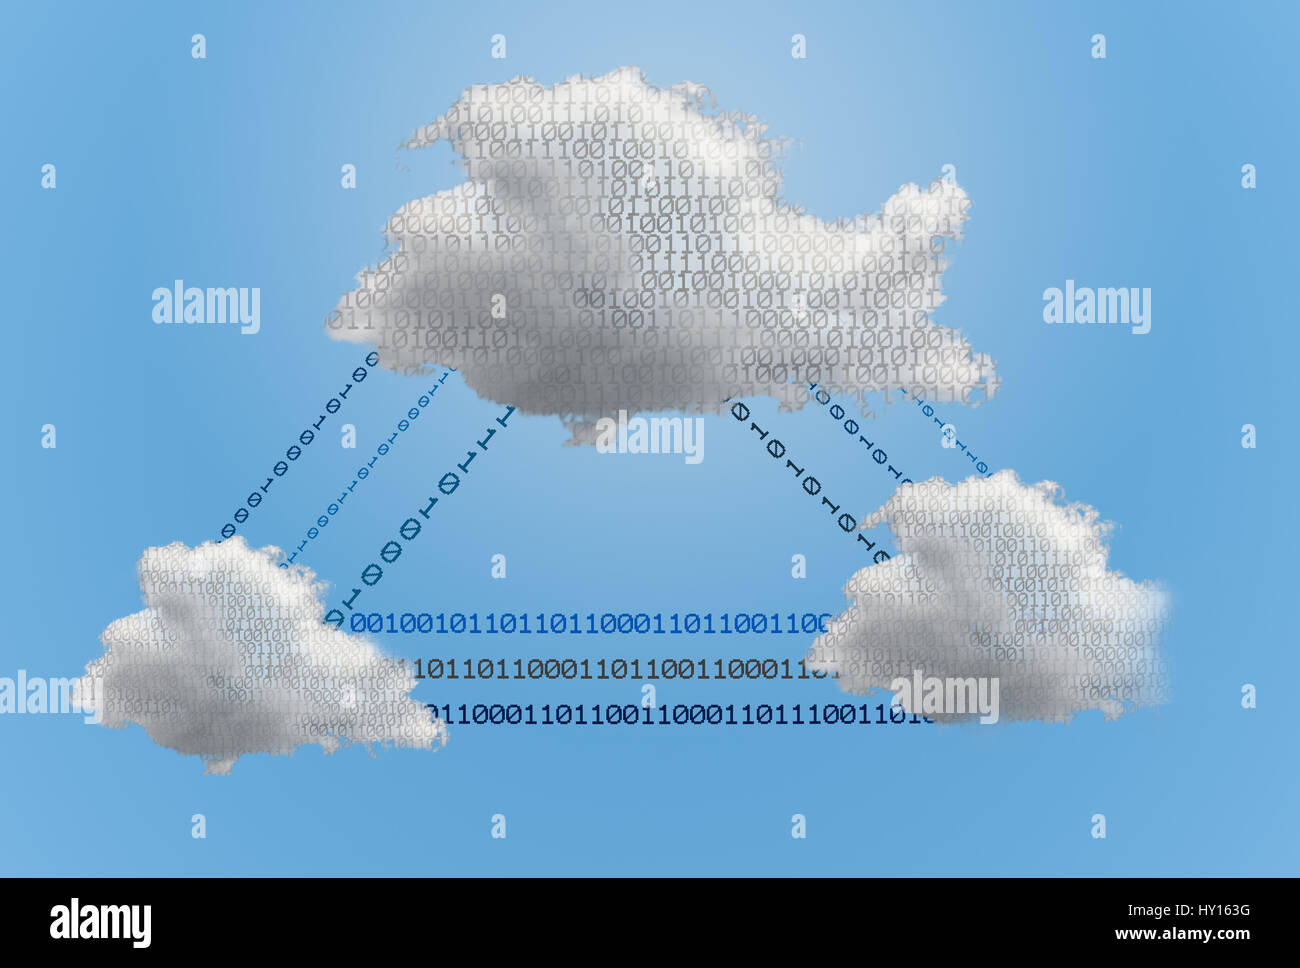 Tech-Konzept - Cloud-computing-Netzwerk und Online-Anwendungen zeigt eine digitale Cloud-Netzwerk über Datenströme miteinander verbunden sind Stockfoto